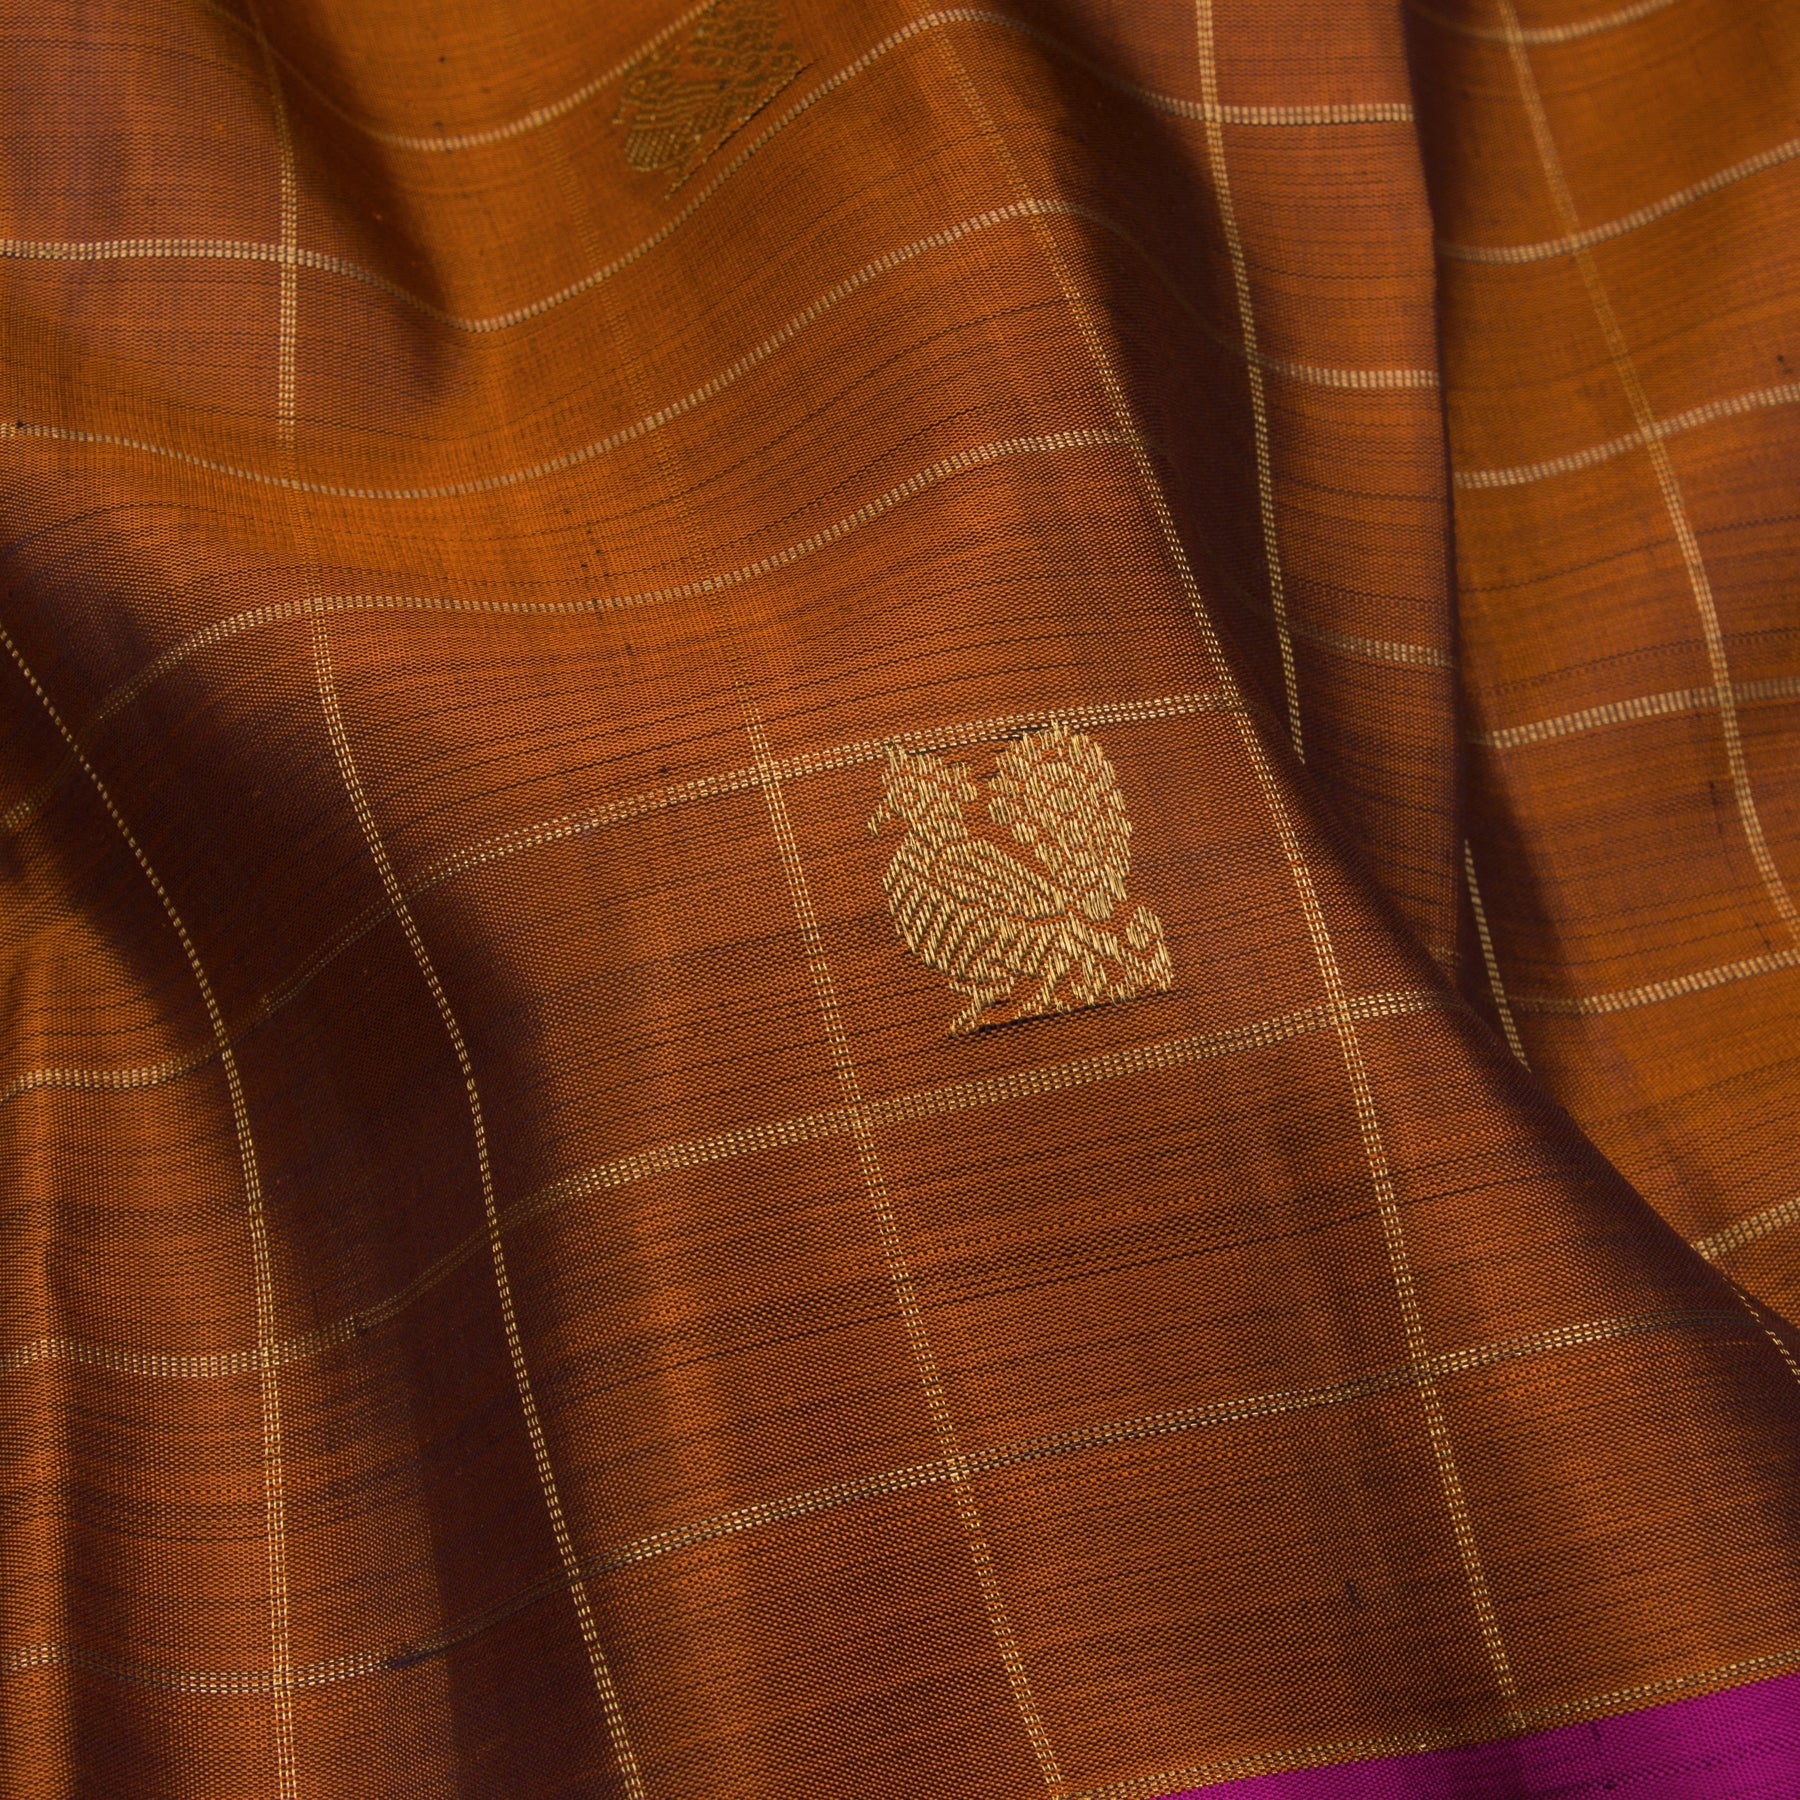 Kanakavalli Kanjivaram Silk Sari 23-599-HS001-01980 - Fabric View